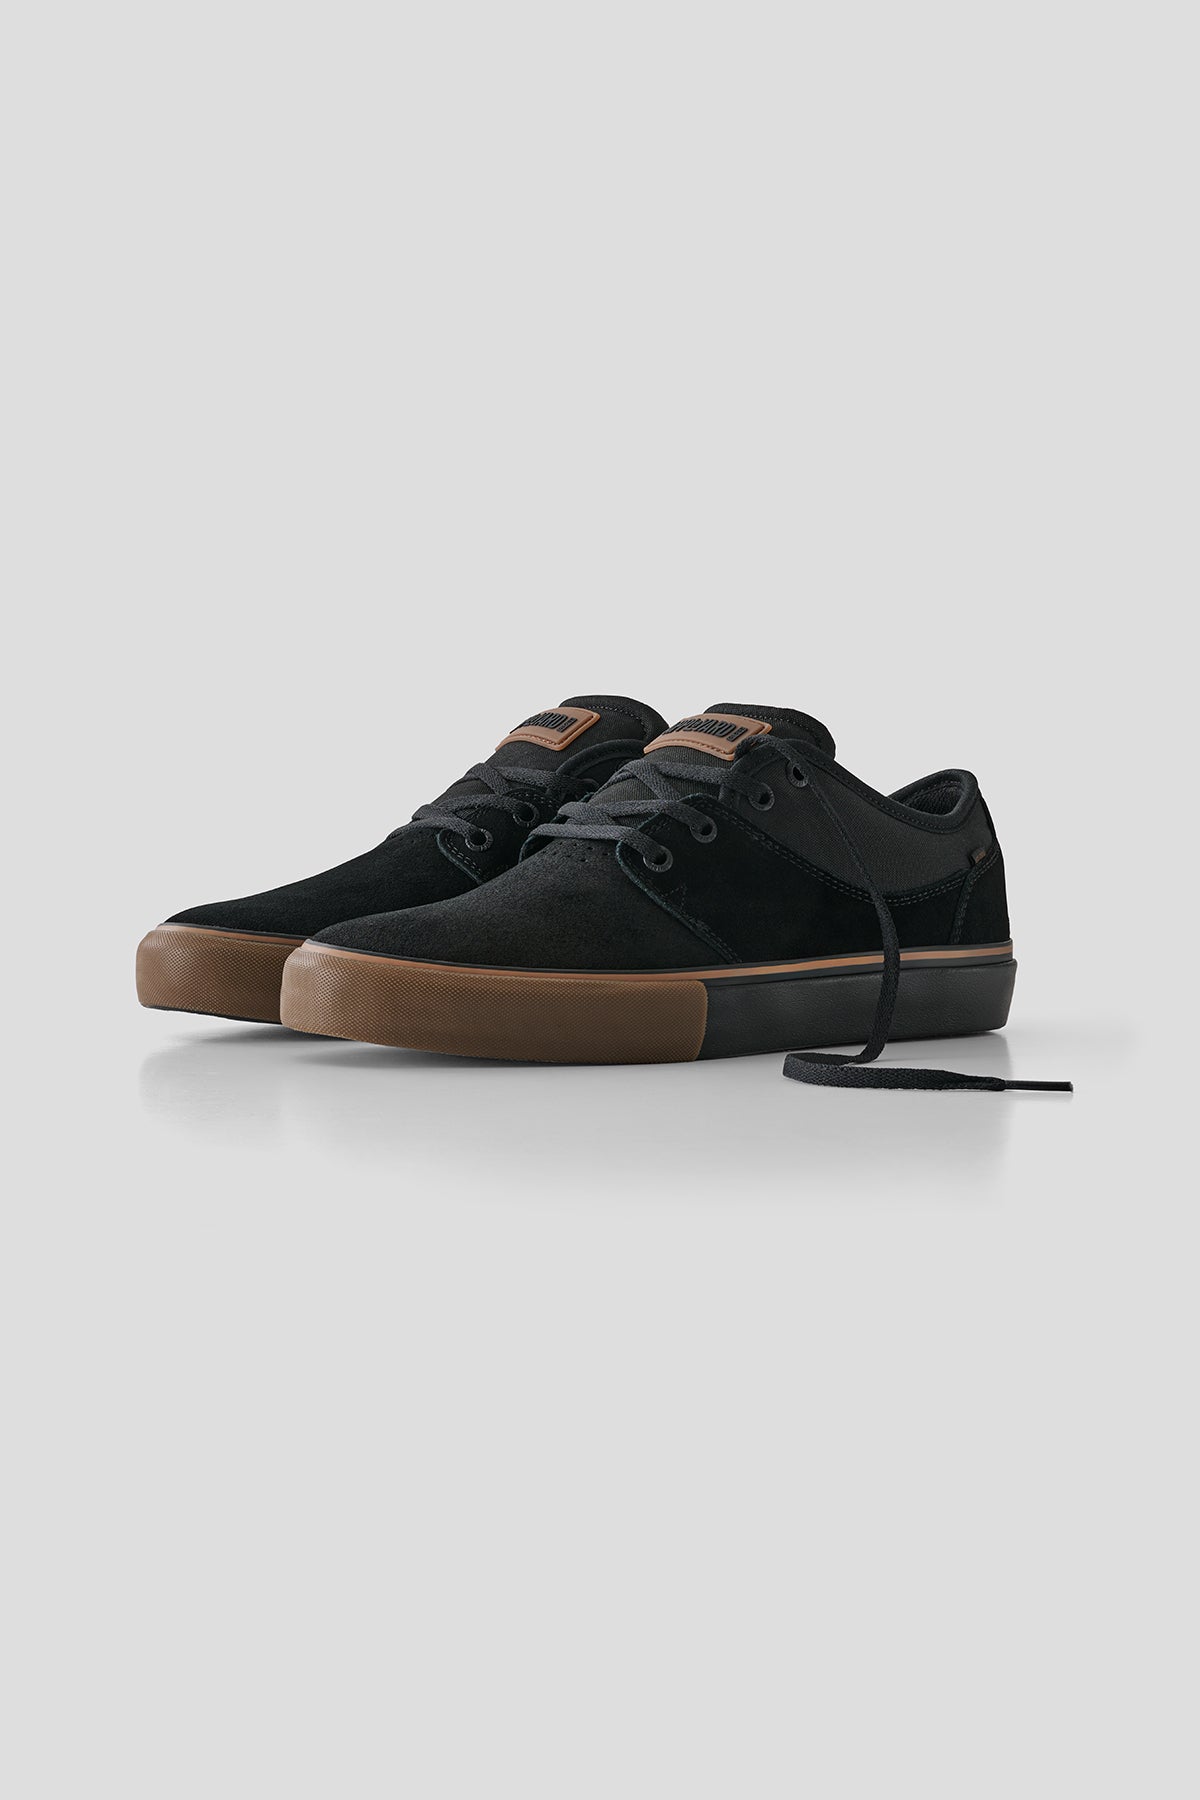 Globe - Mahalo - Negro/Goma - skateboard Zapatos